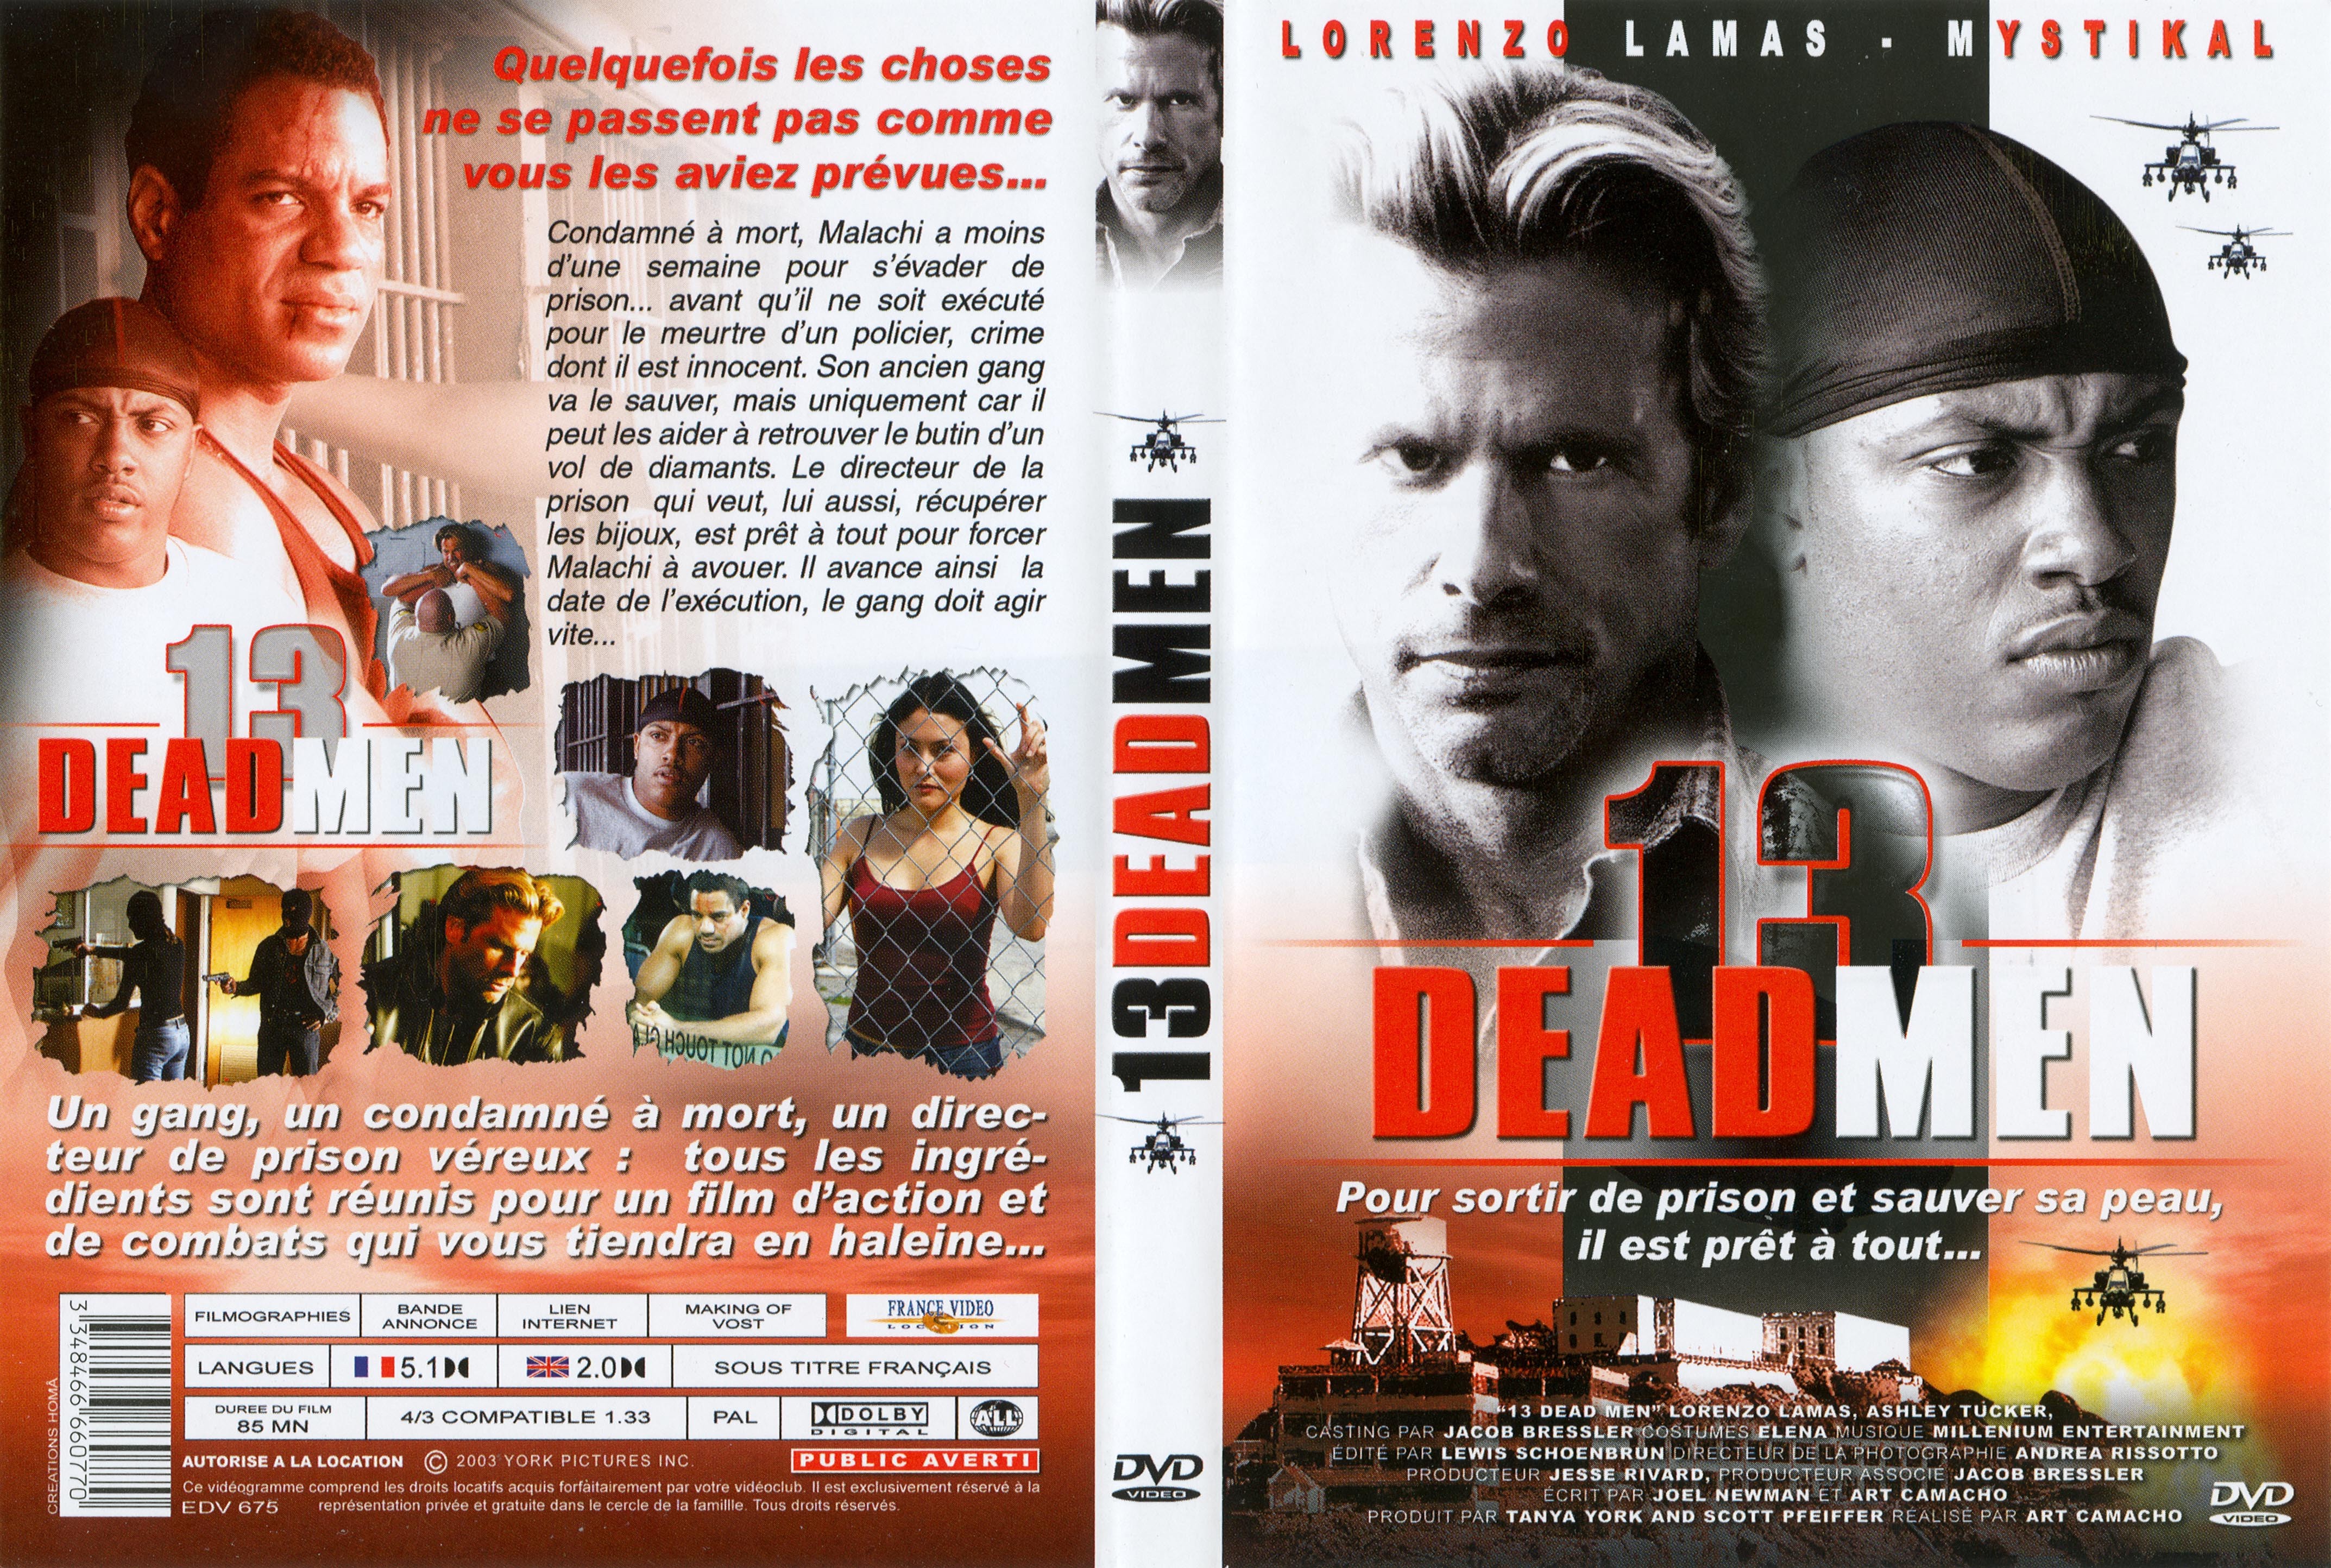 Jaquette DVD 13 dead men